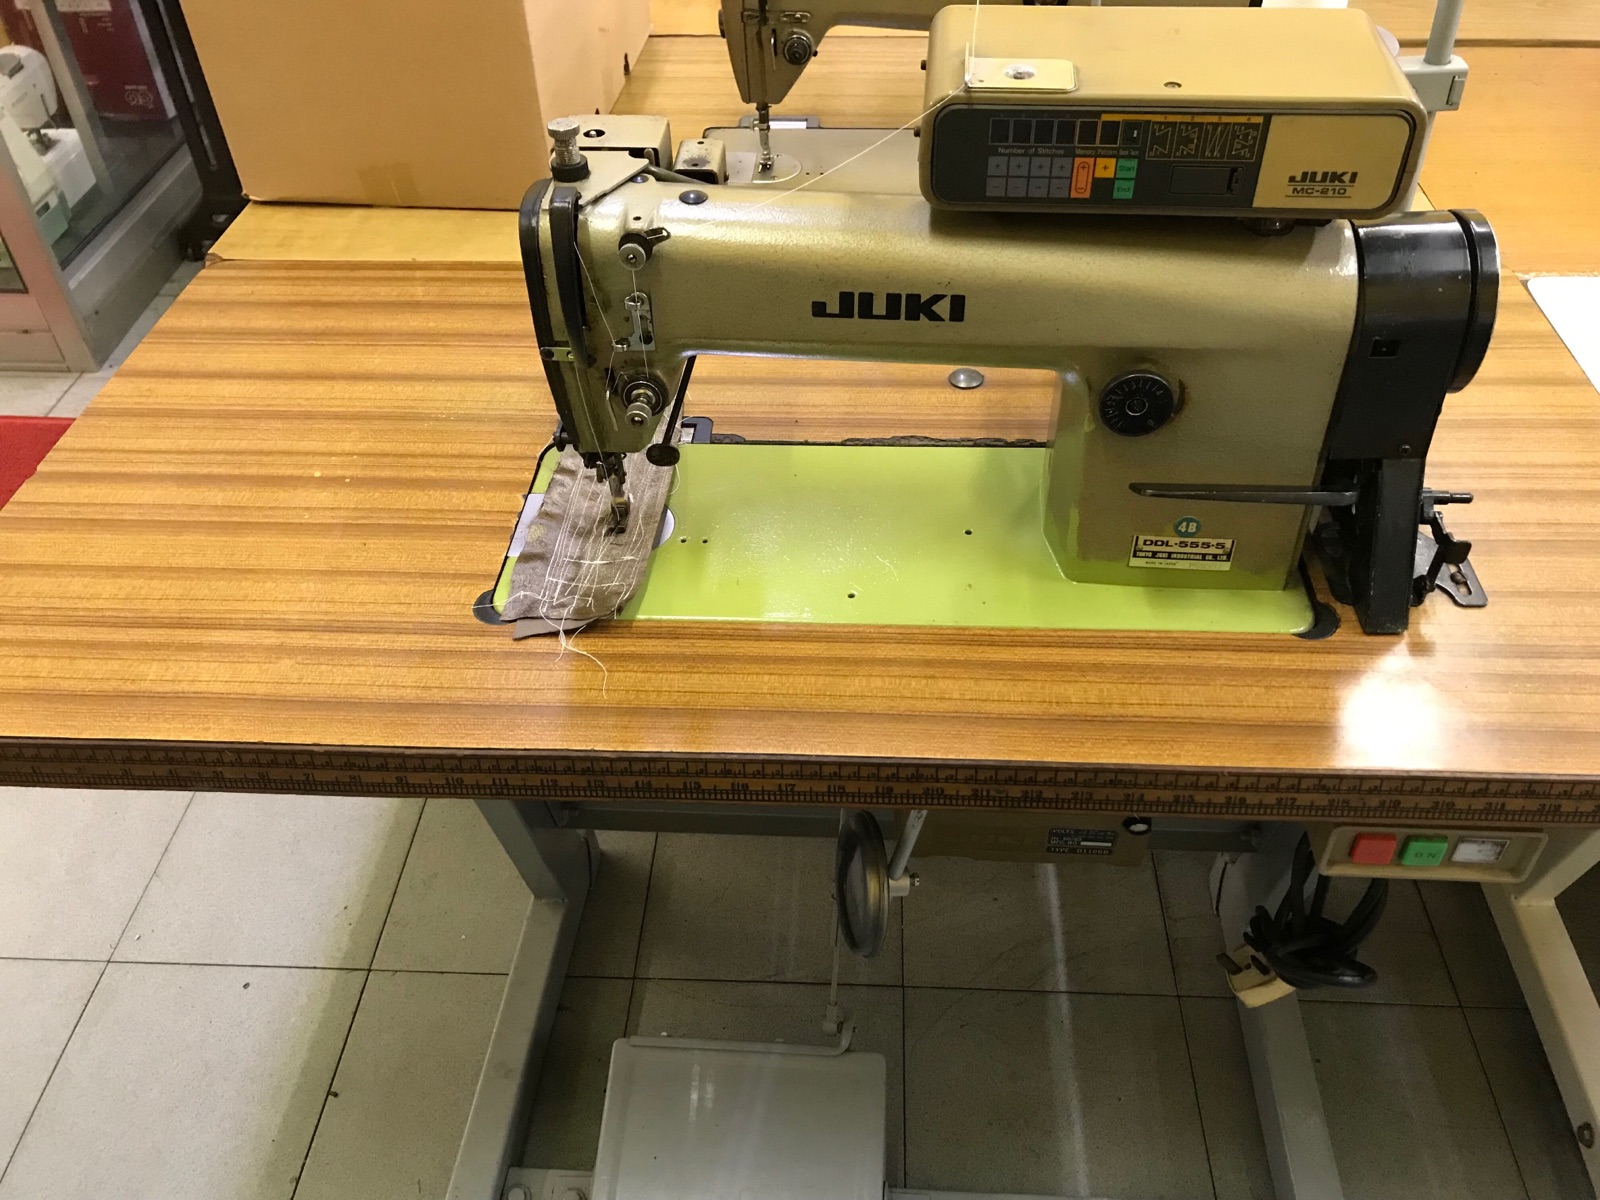 Juki Hi Speed Sewing Machine 